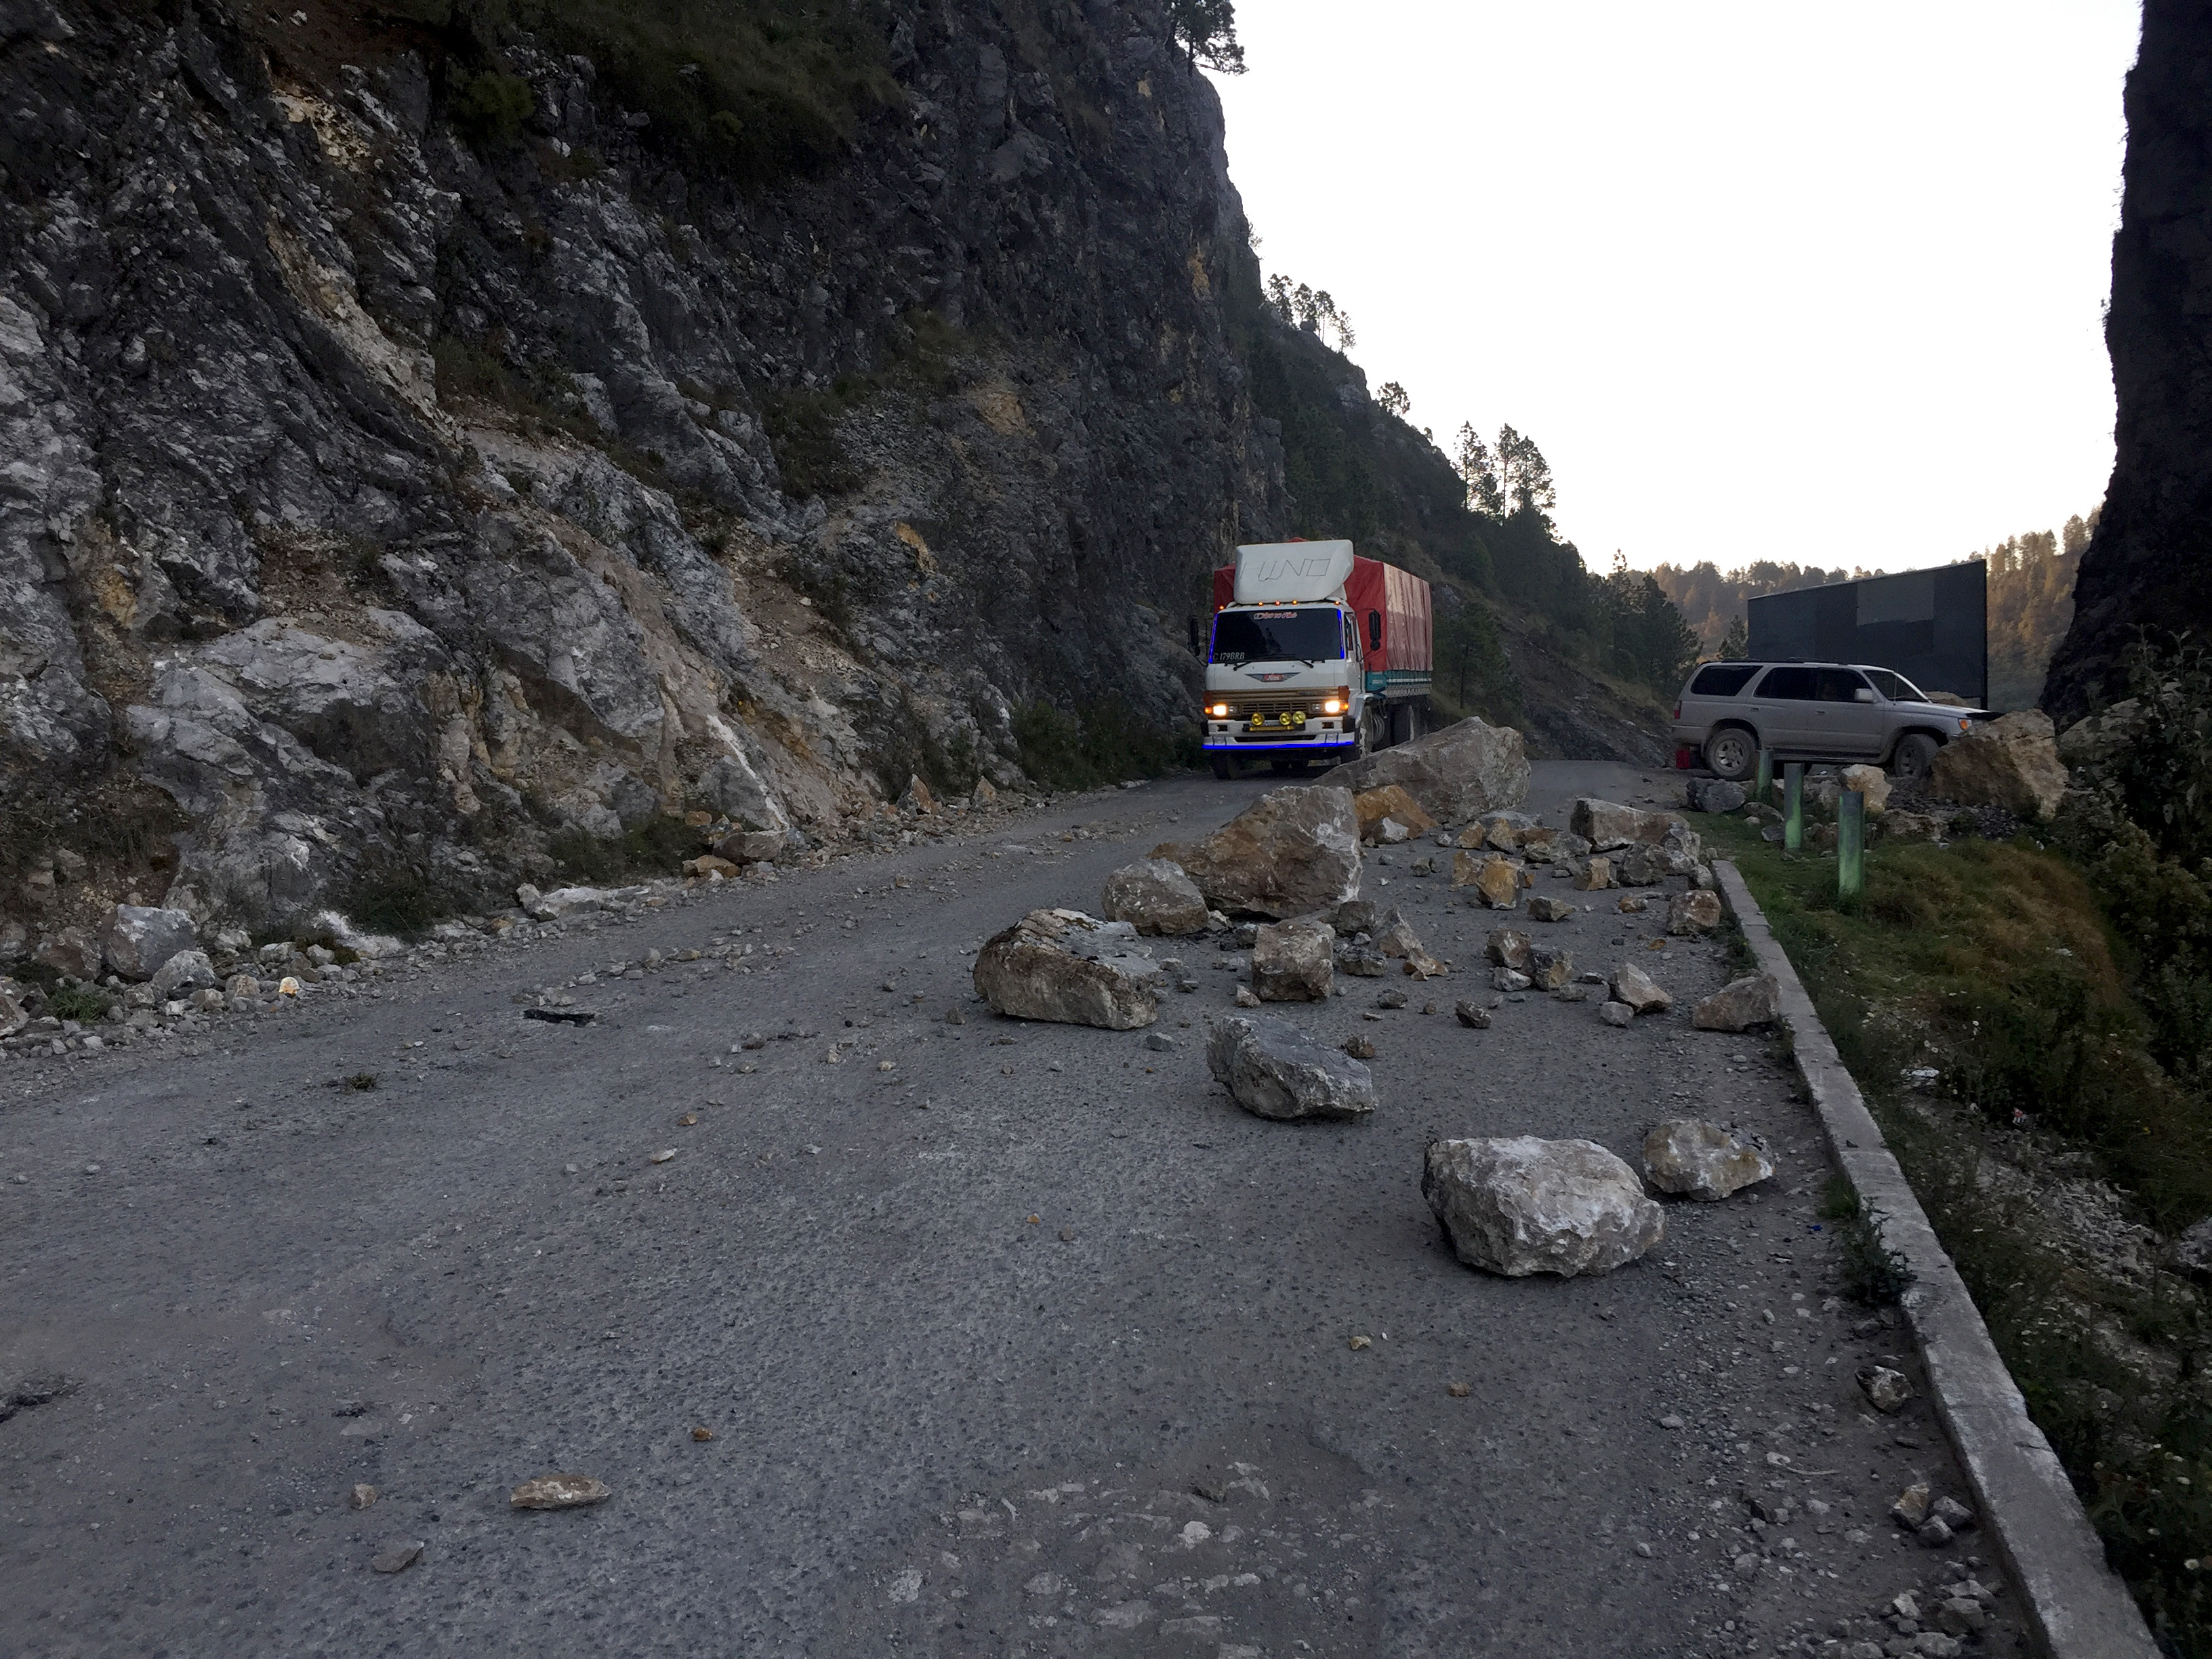 La carretera al norte de Huehuetenango durante el invierno es peligrosa por el desprendimiento de rocas de gran tamaño. (Foto Prensa Libre: Mike Castillo)